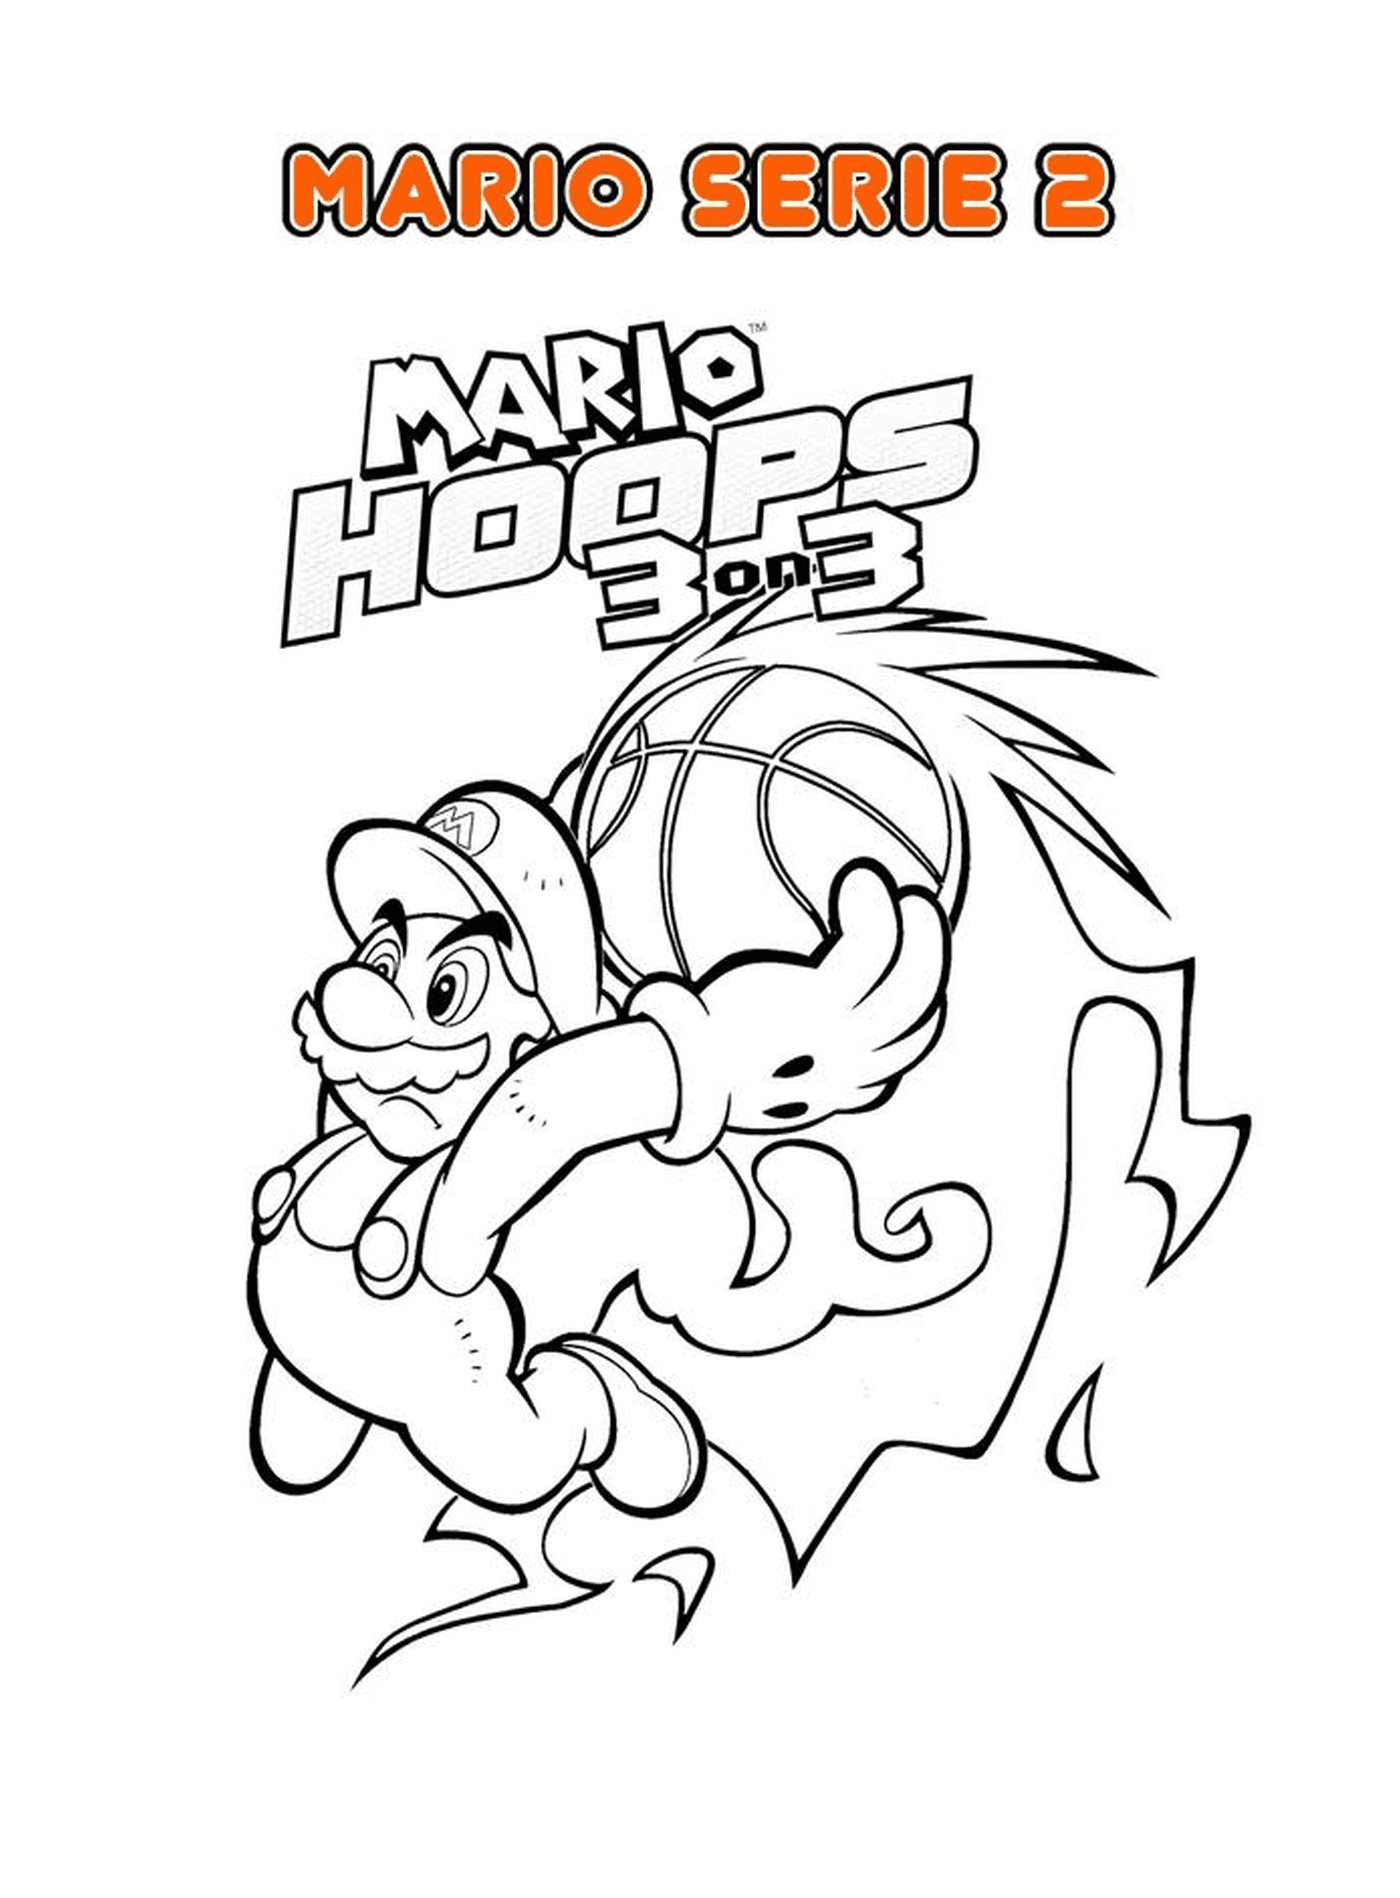  Mario Bros Nintendo 2, a Mario character 